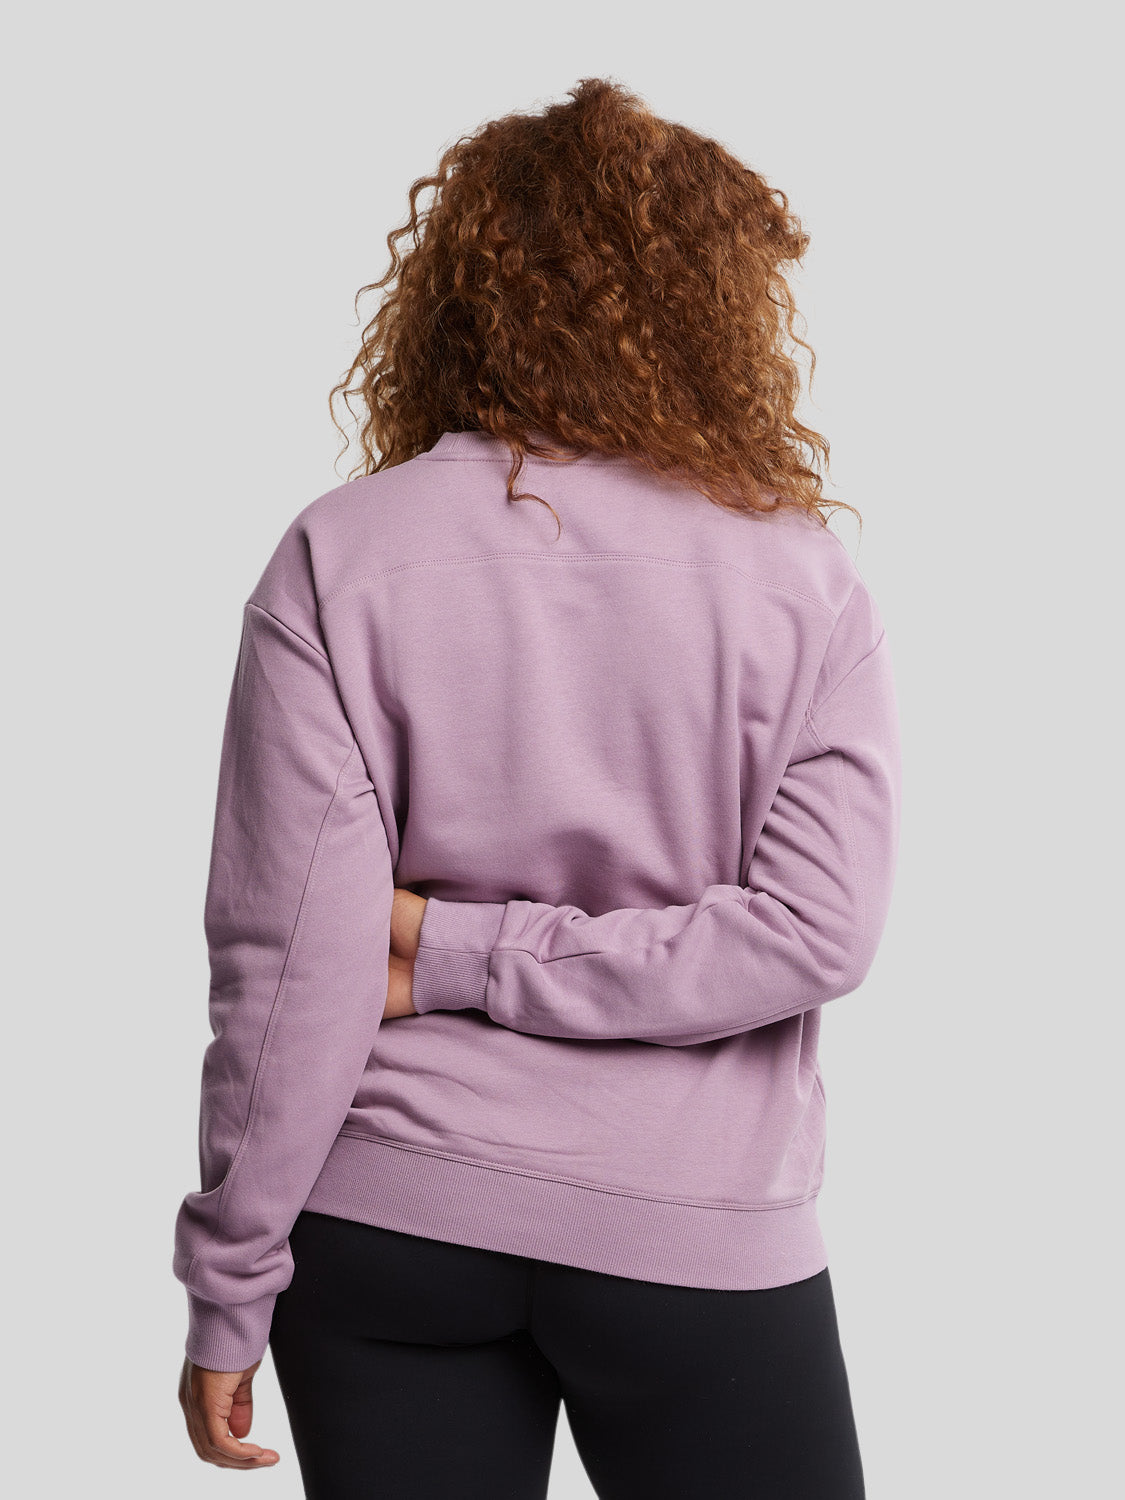 kvinde bagfra med sweatshirt i farven dusty purple